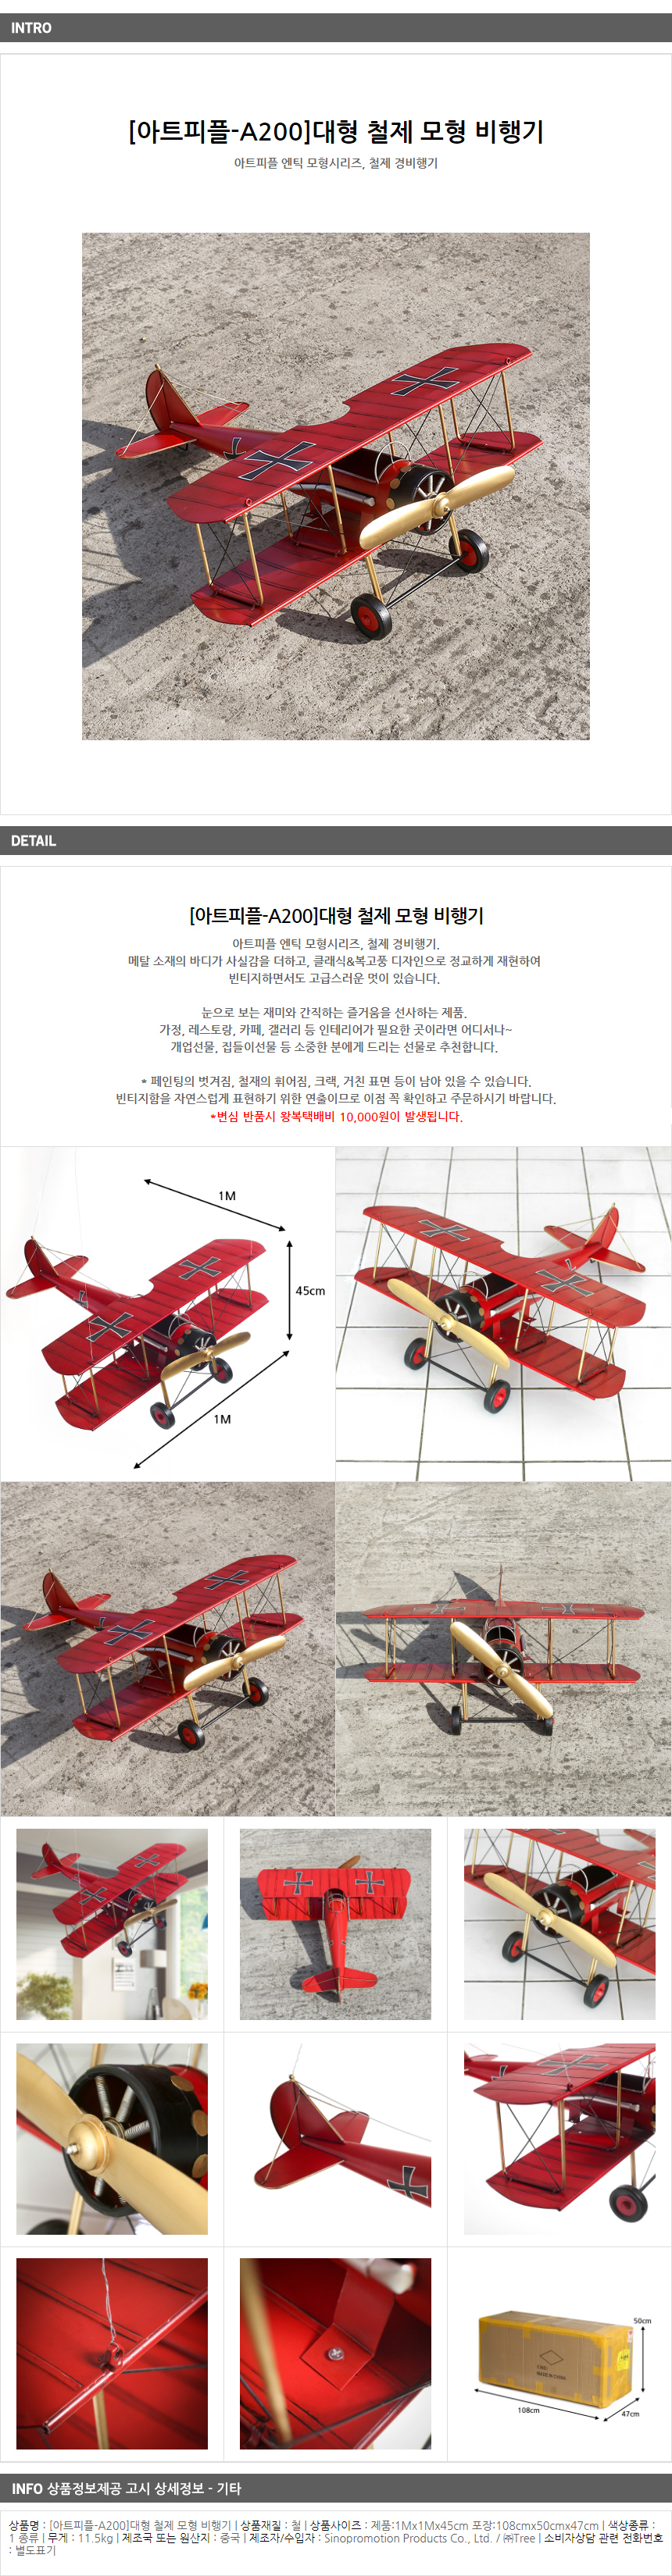 [아트피플-A200]대형 철제 모형 비행기/매장인테리어